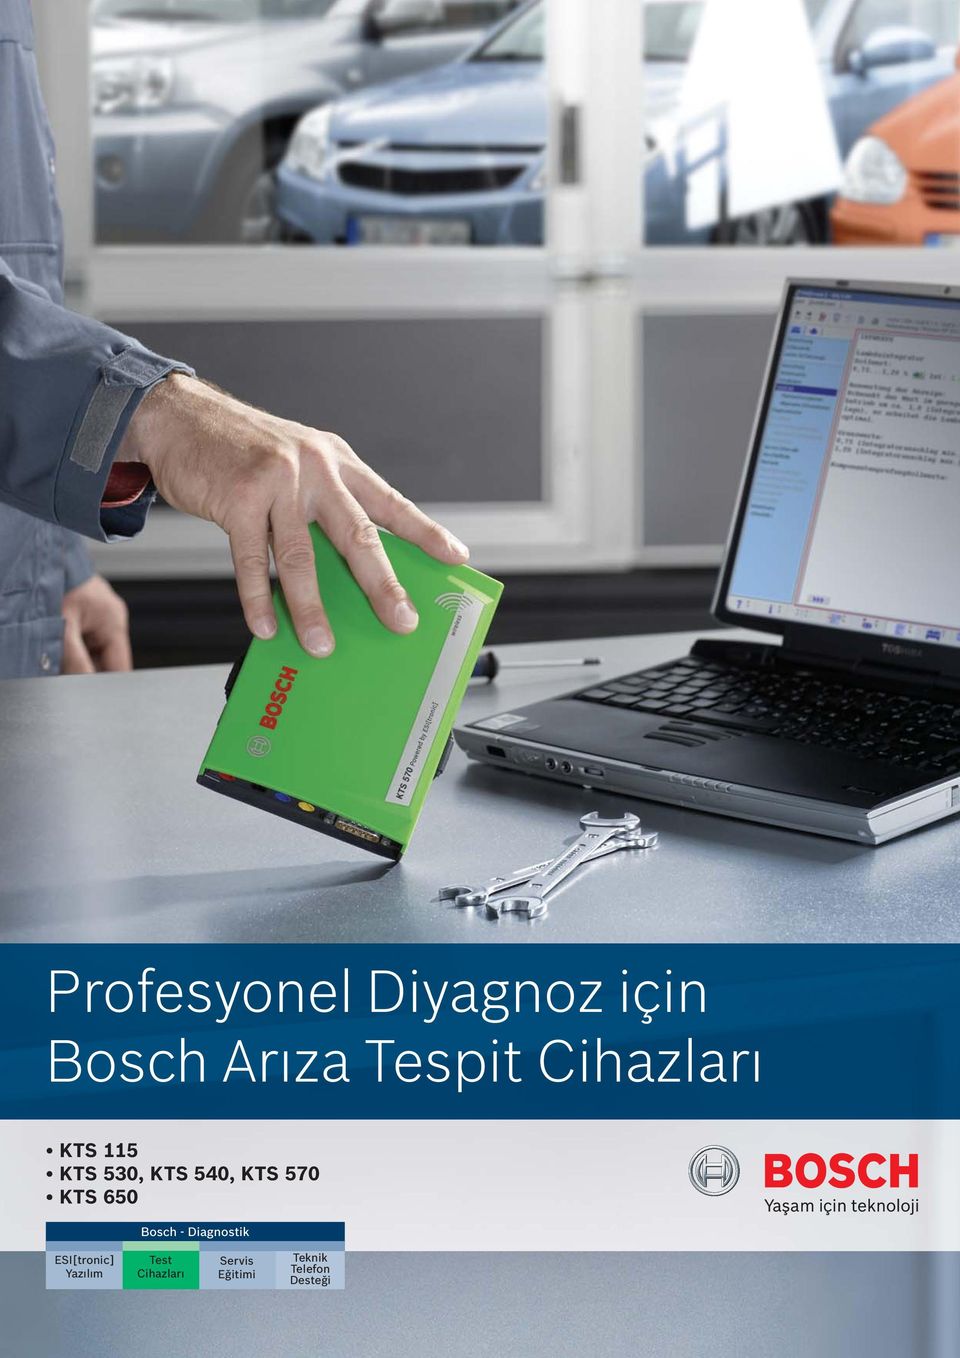 KTS 650 Bosch - Diagnostik ESI[tronic] Yazılım